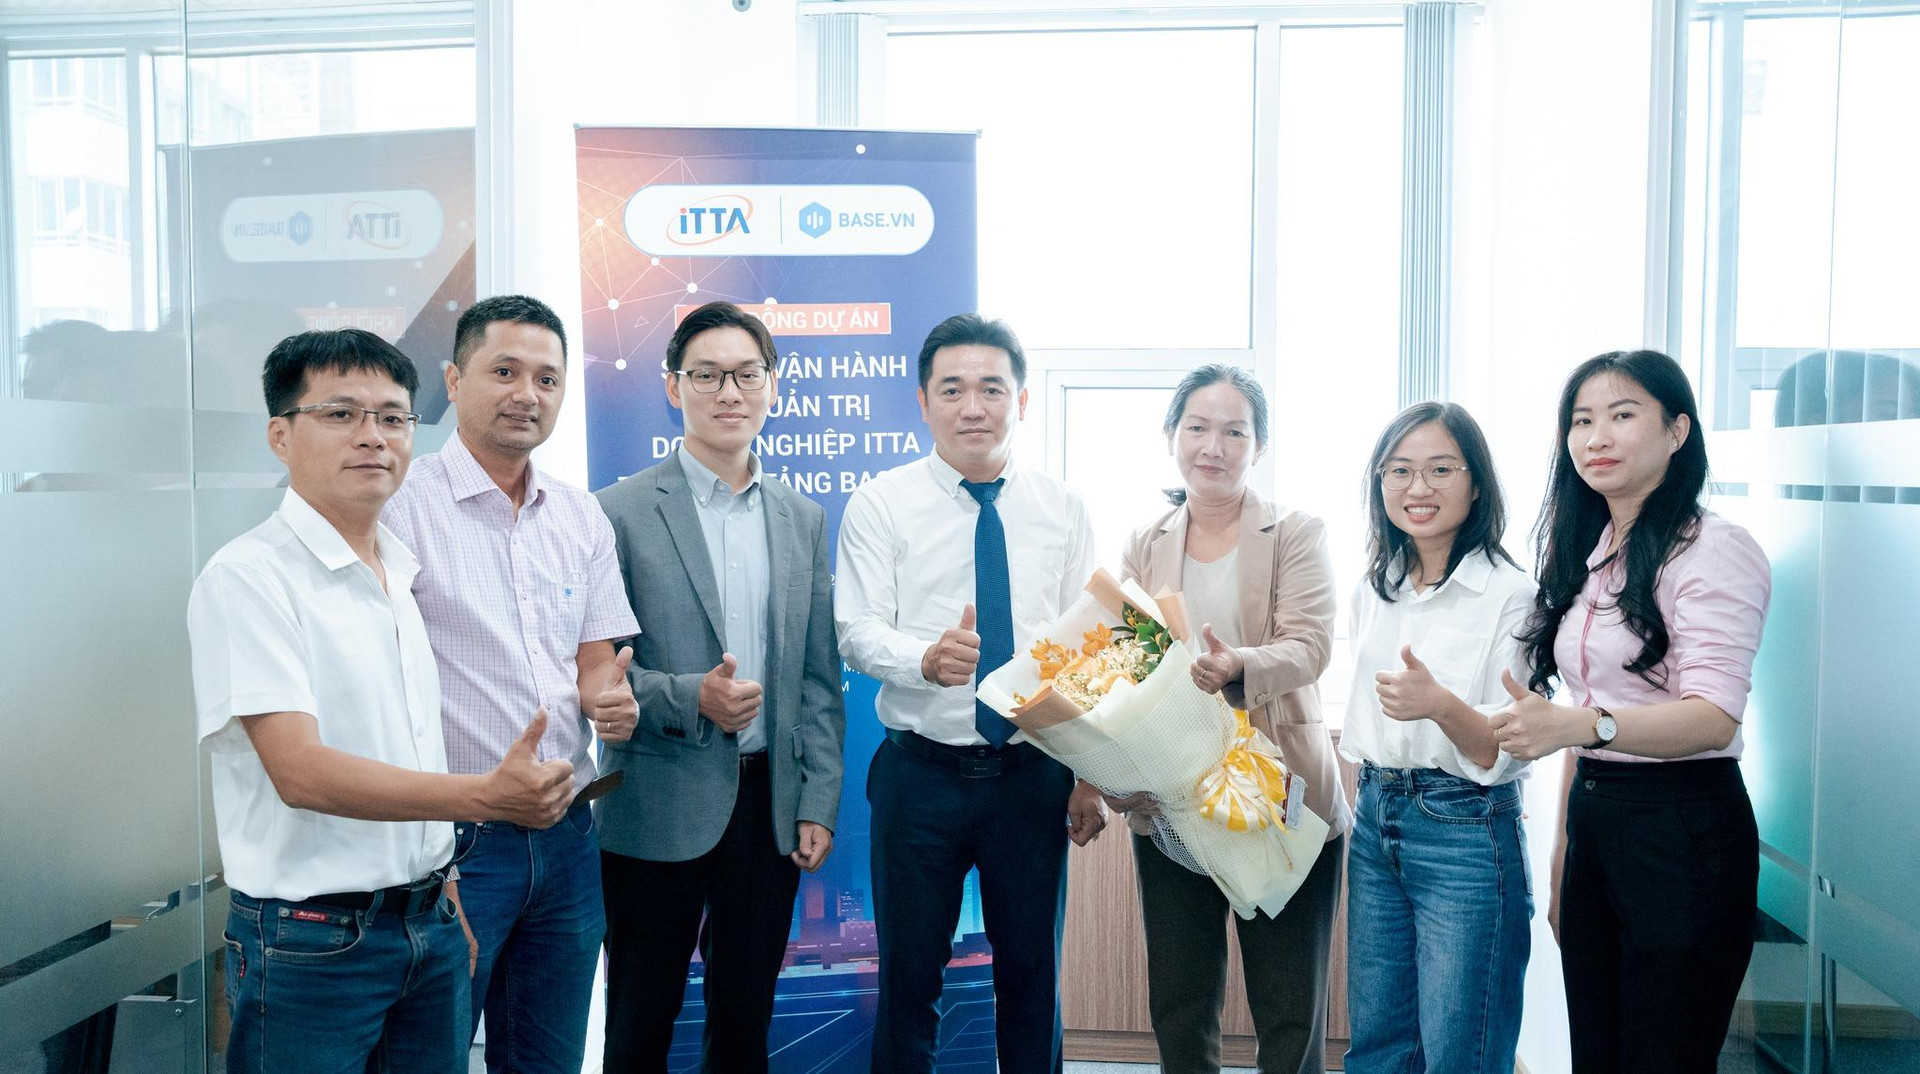 Tập thể nhân sự ITTA đồng lòng cùng Ban lãnh đạo trên hành trình CĐS